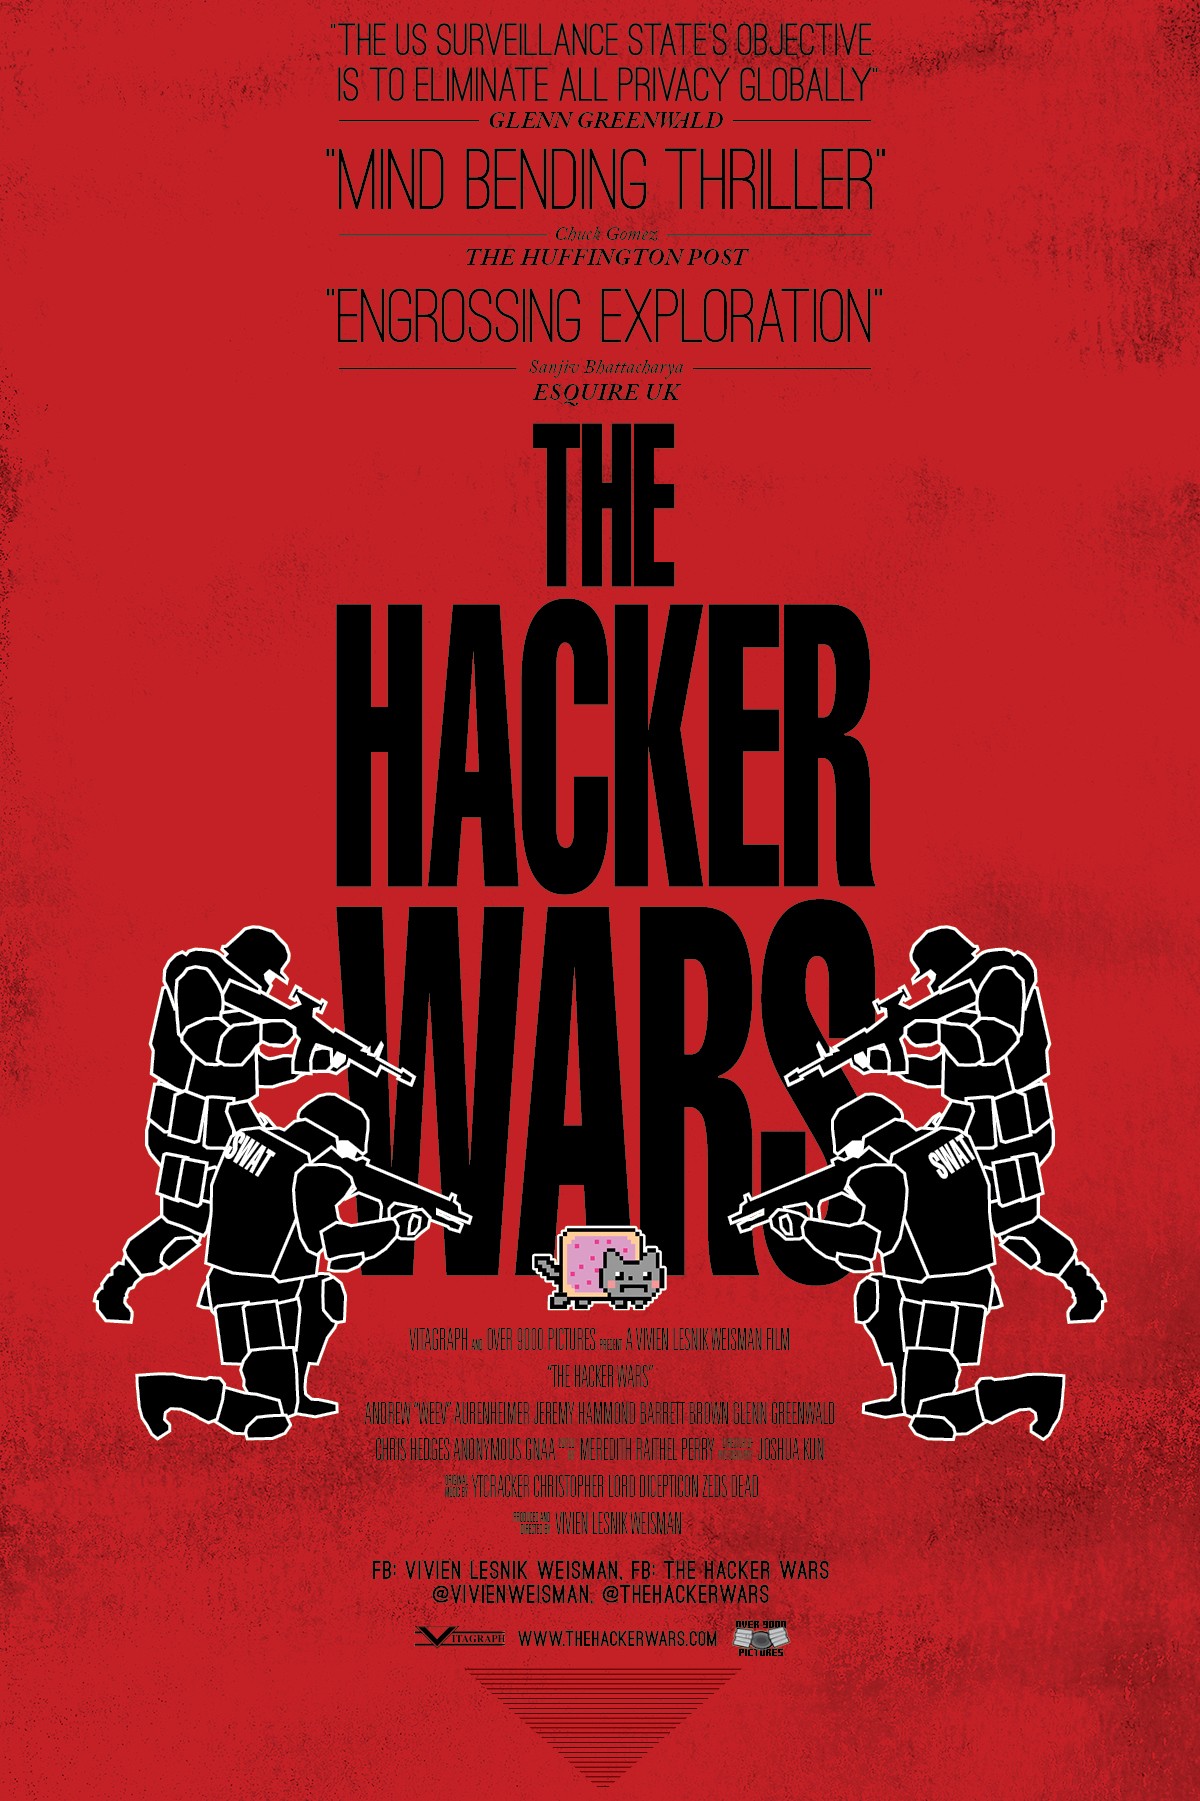 Hunting Warhead: Episode 1, Hacker vs Hacker 